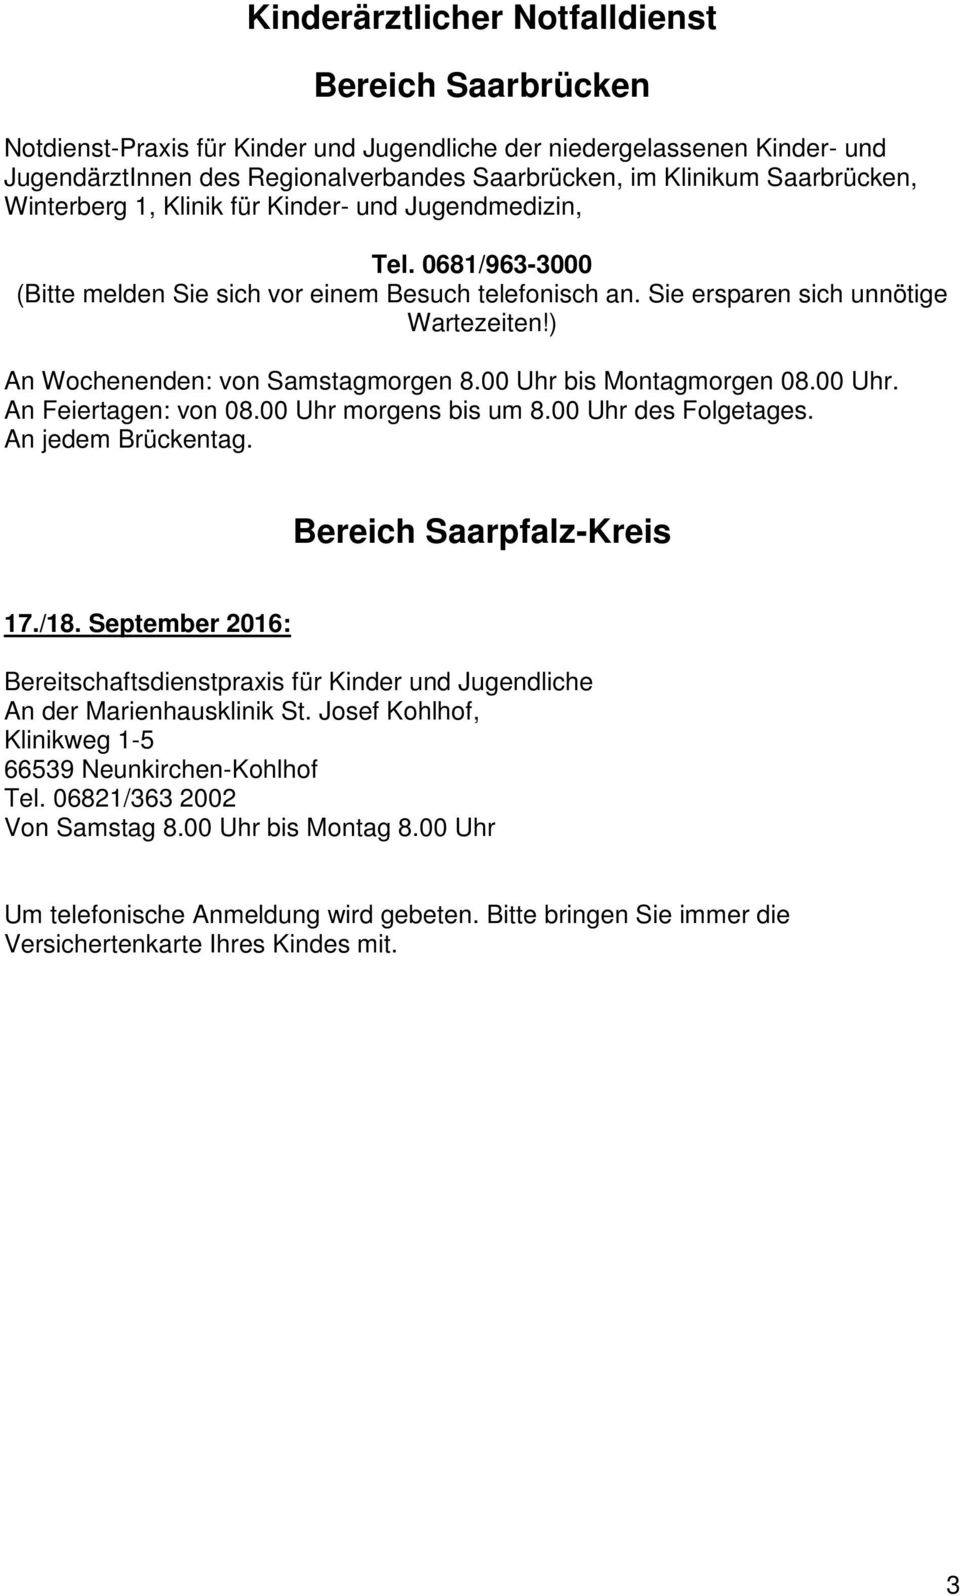 ) An Wochenenden: von Samstagmorgen 8.00 Uhr bis Montagmorgen 08.00 Uhr. An Feiertagen: von 08.00 Uhr morgens bis um 8.00 Uhr des Folgetages. An jedem Brückentag. Bereich Saarpfalz-Kreis 17./18.